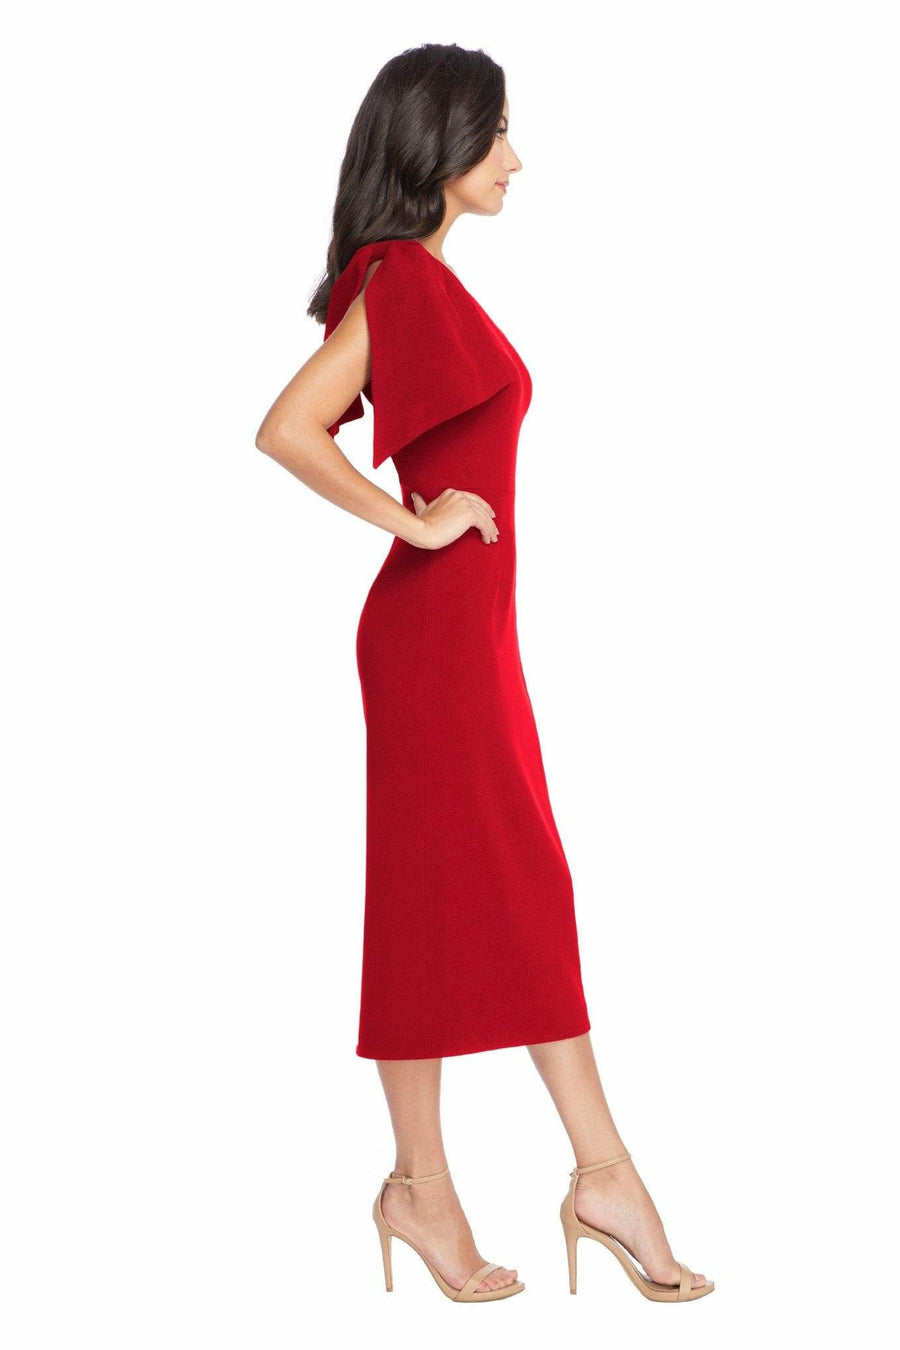 Tiffany Garnet Taper-Waist Midi Dress - Dress the Population